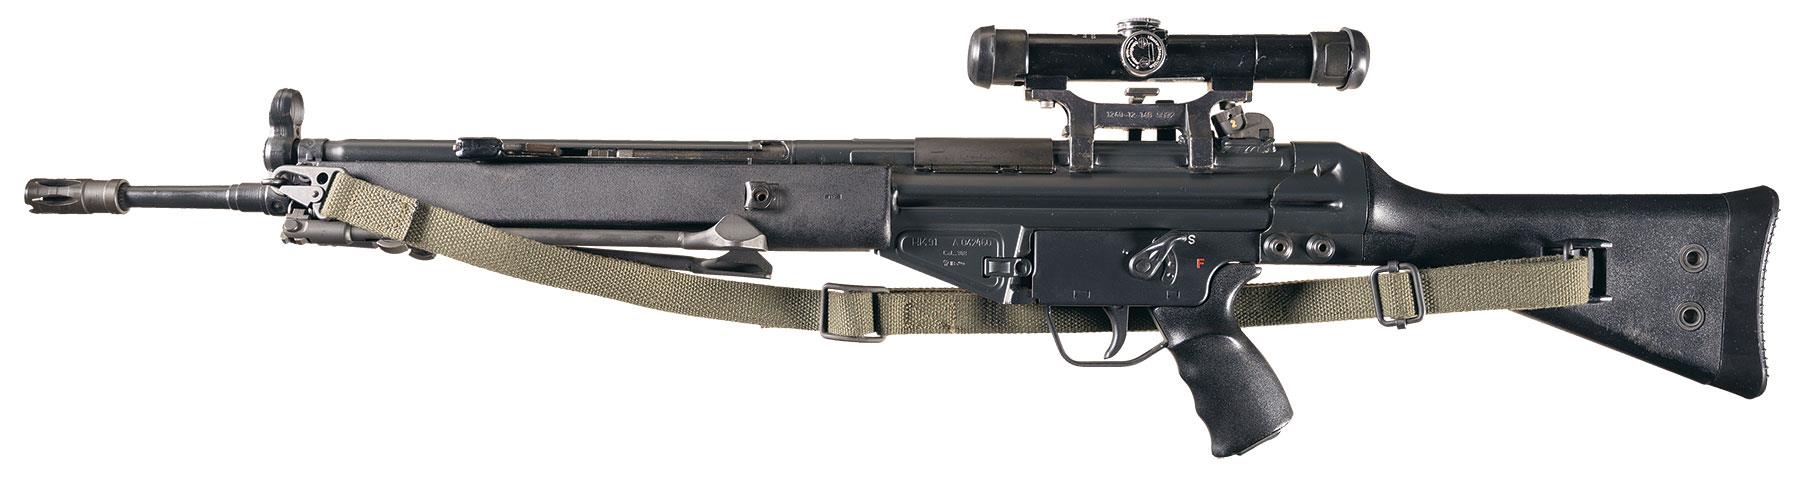 1981 Heckler & Koch HK 91 Rifle w/Scope.